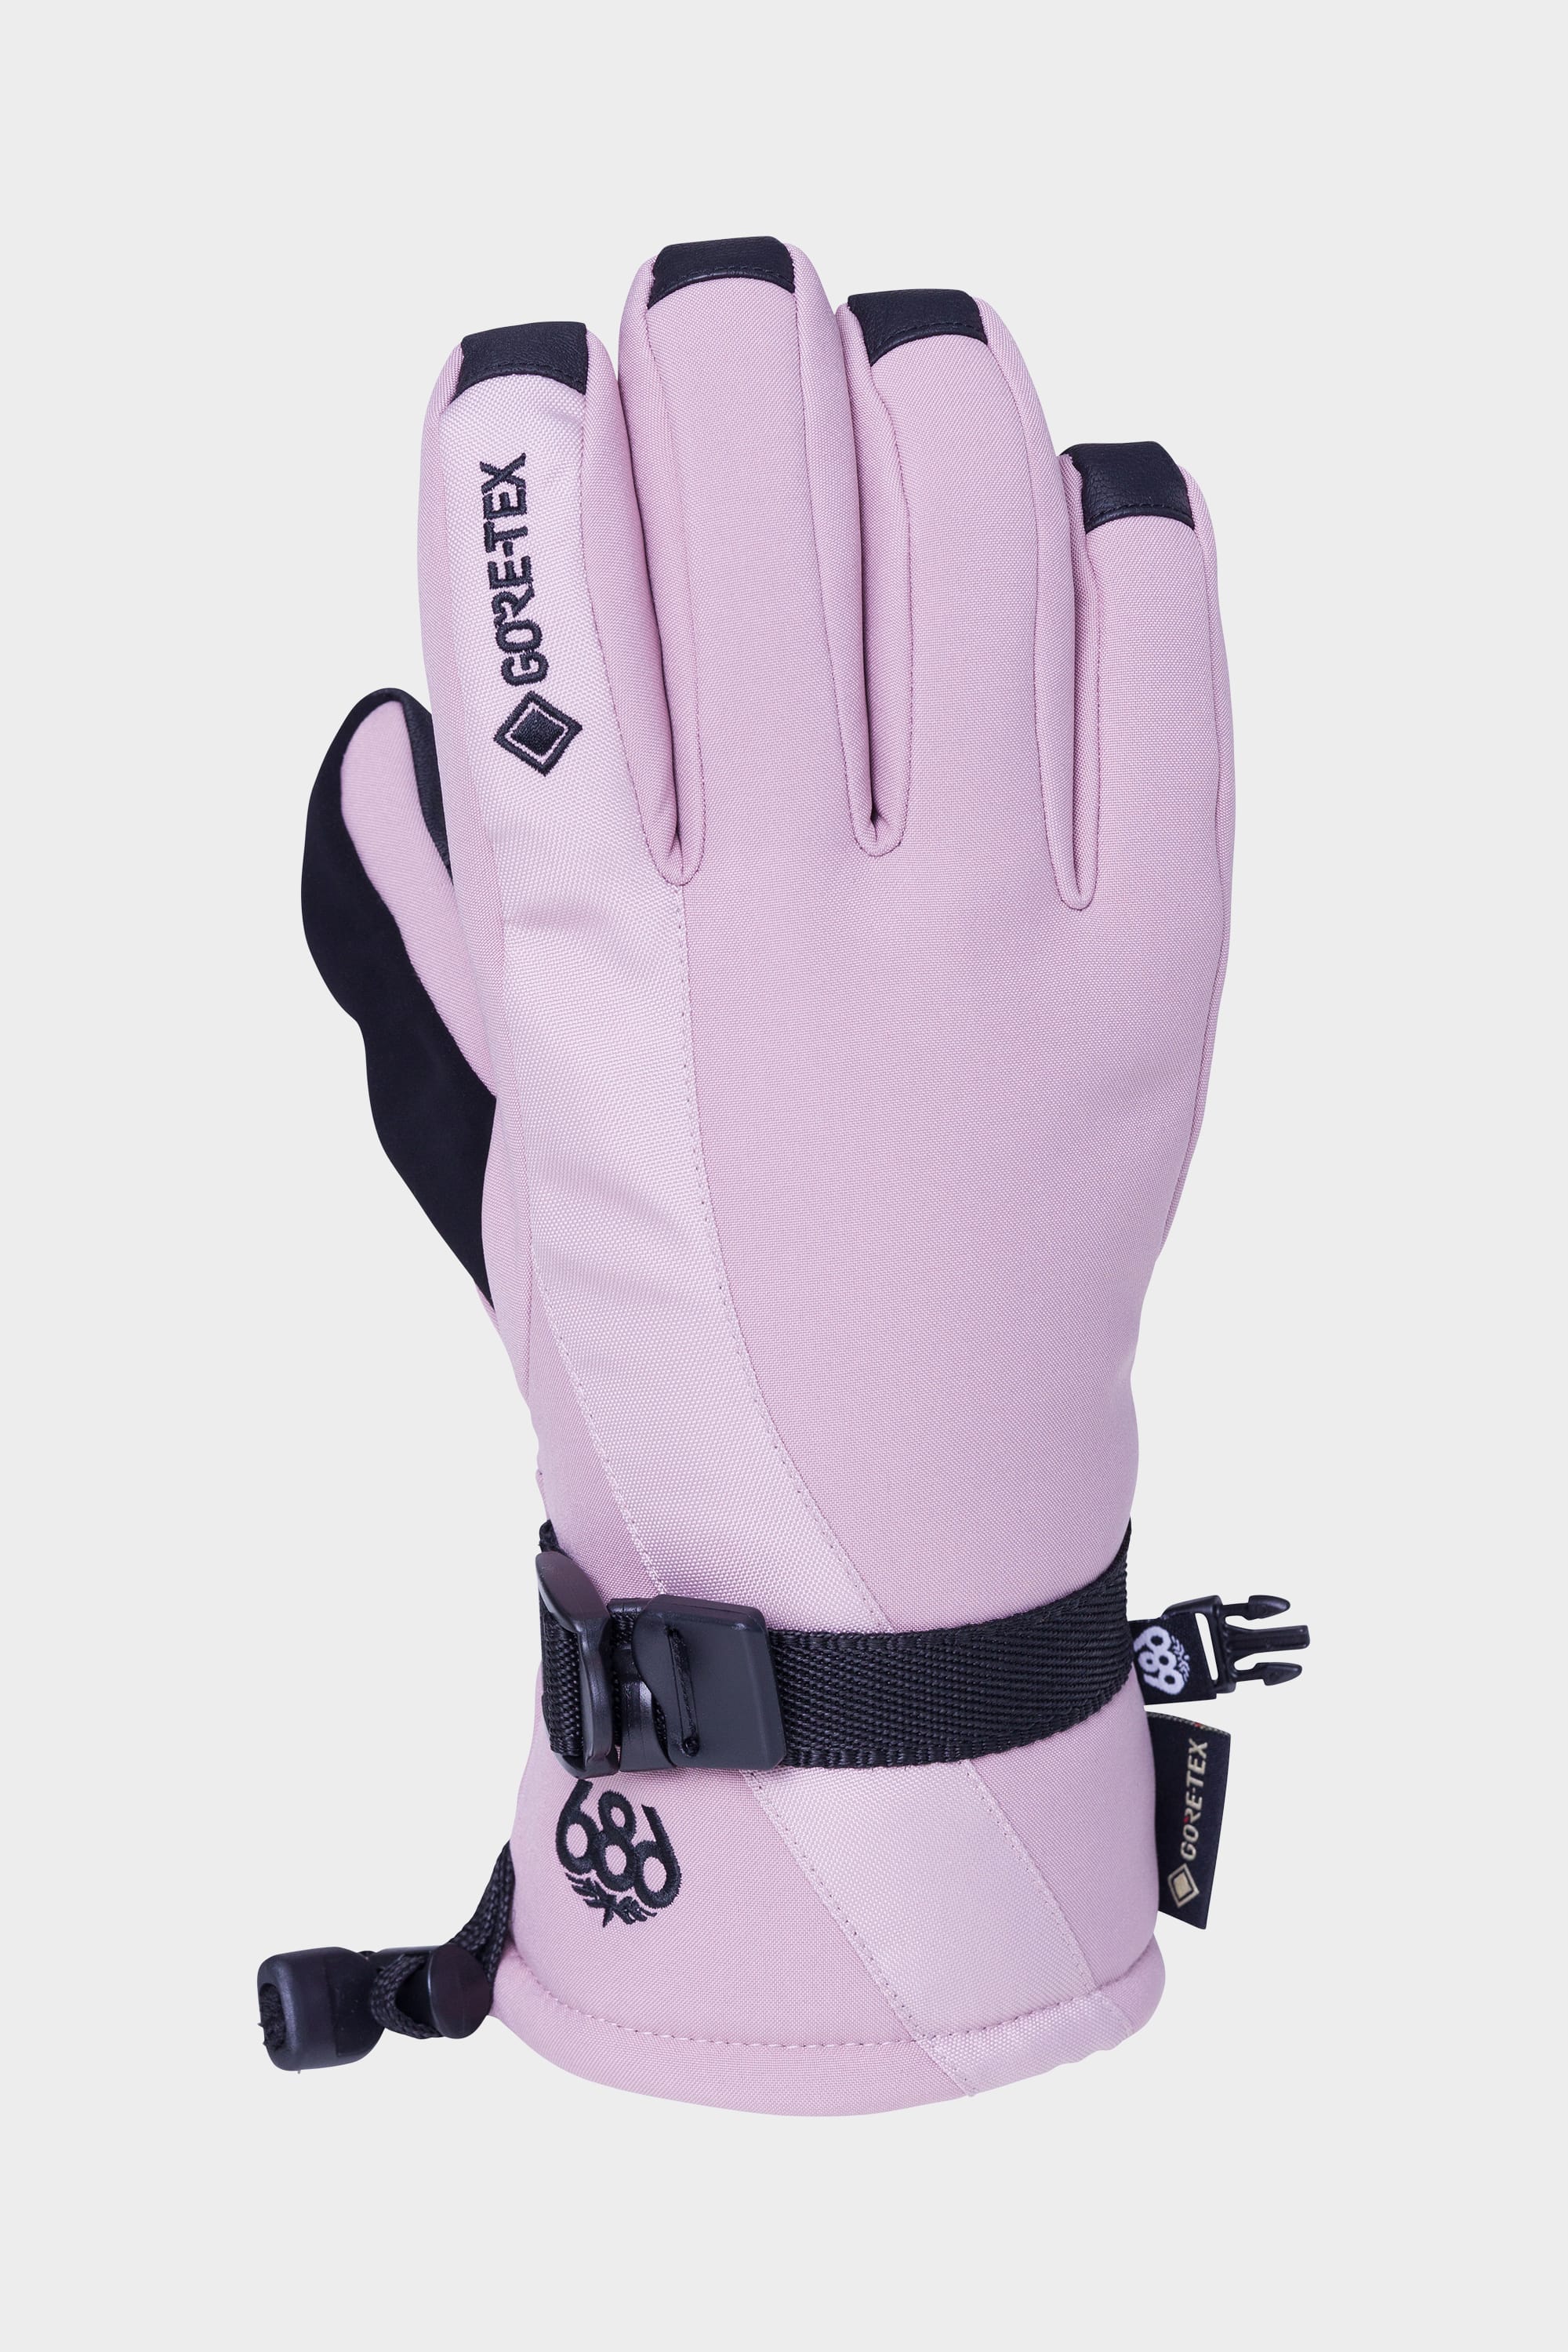 686 Gore-tex linear dusty orchid gants de ski femme Textile tech